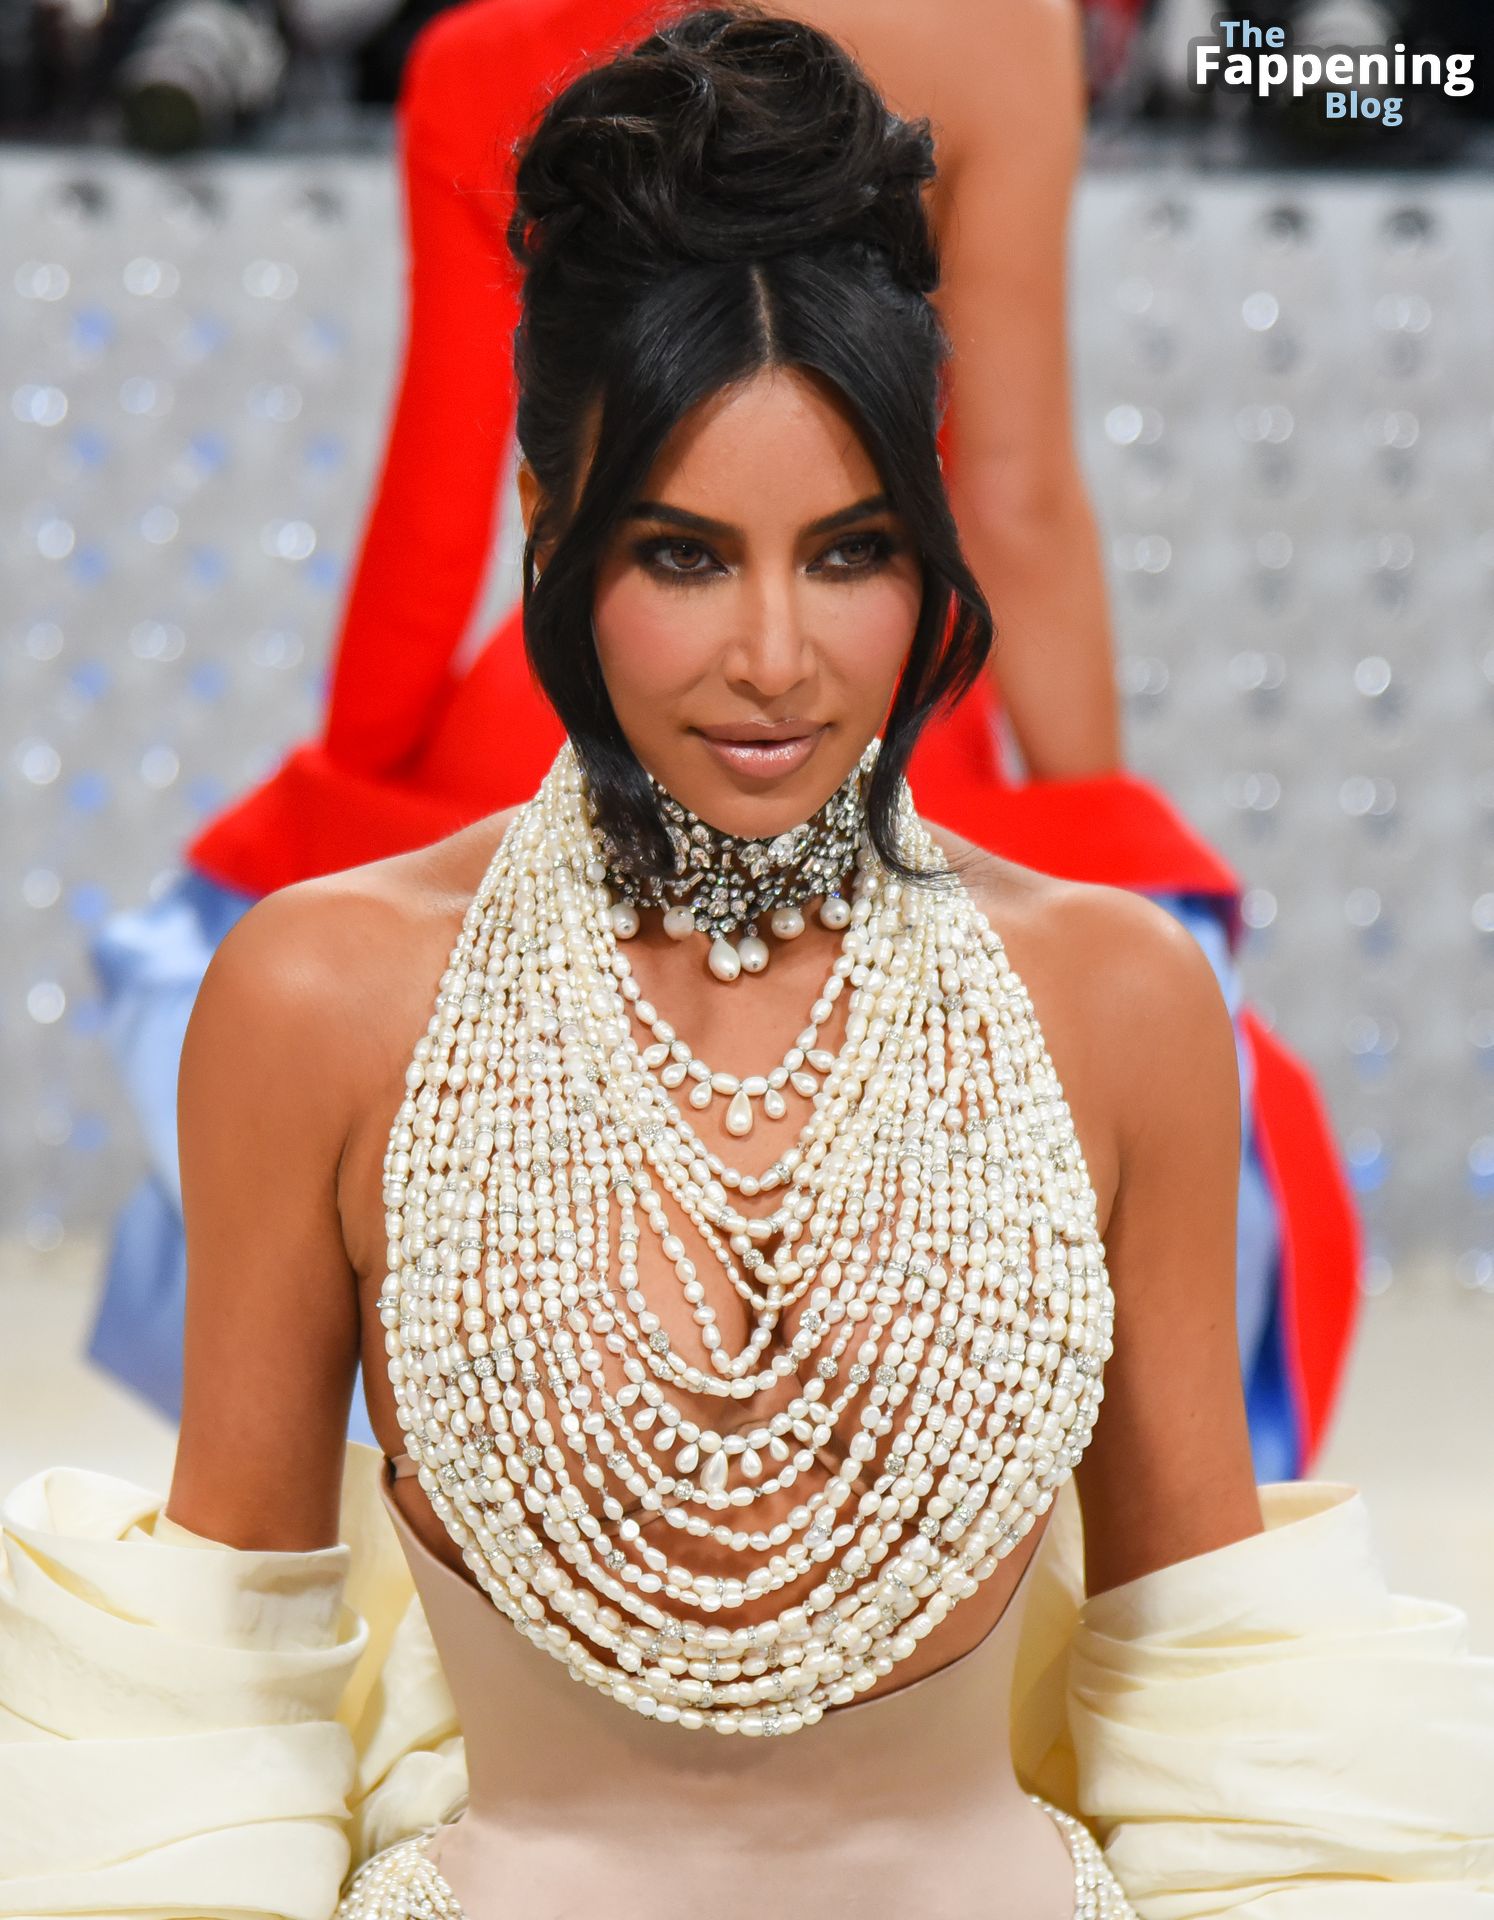 Kim-Kardashian-Sexy-The-Fappening-Blog-7.jpg